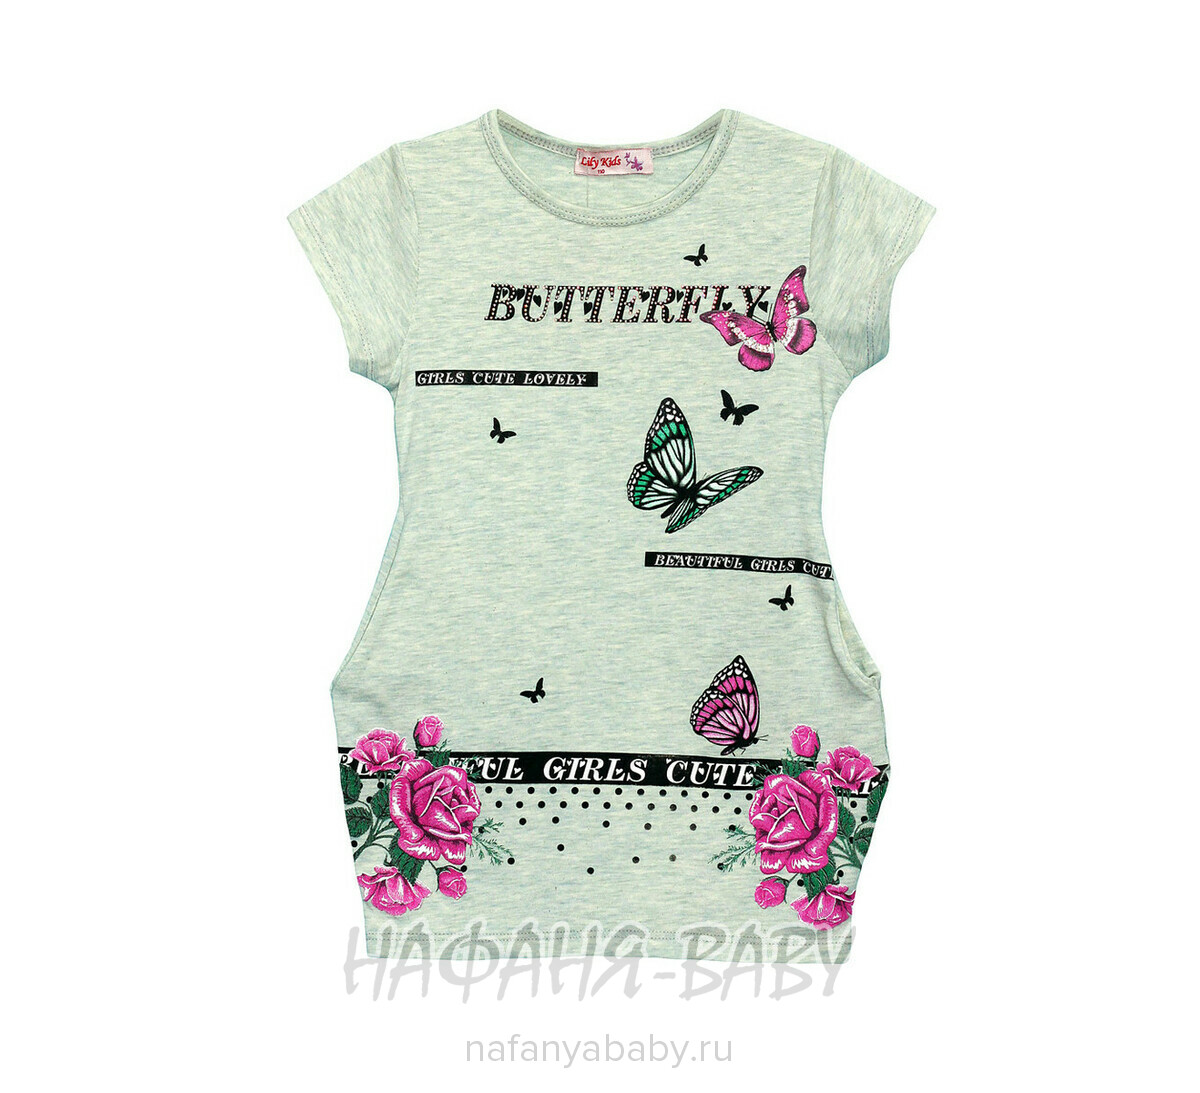 Детское платье-туника Lily Kids, купить в интернет магазине Нафаня. арт: 4508.